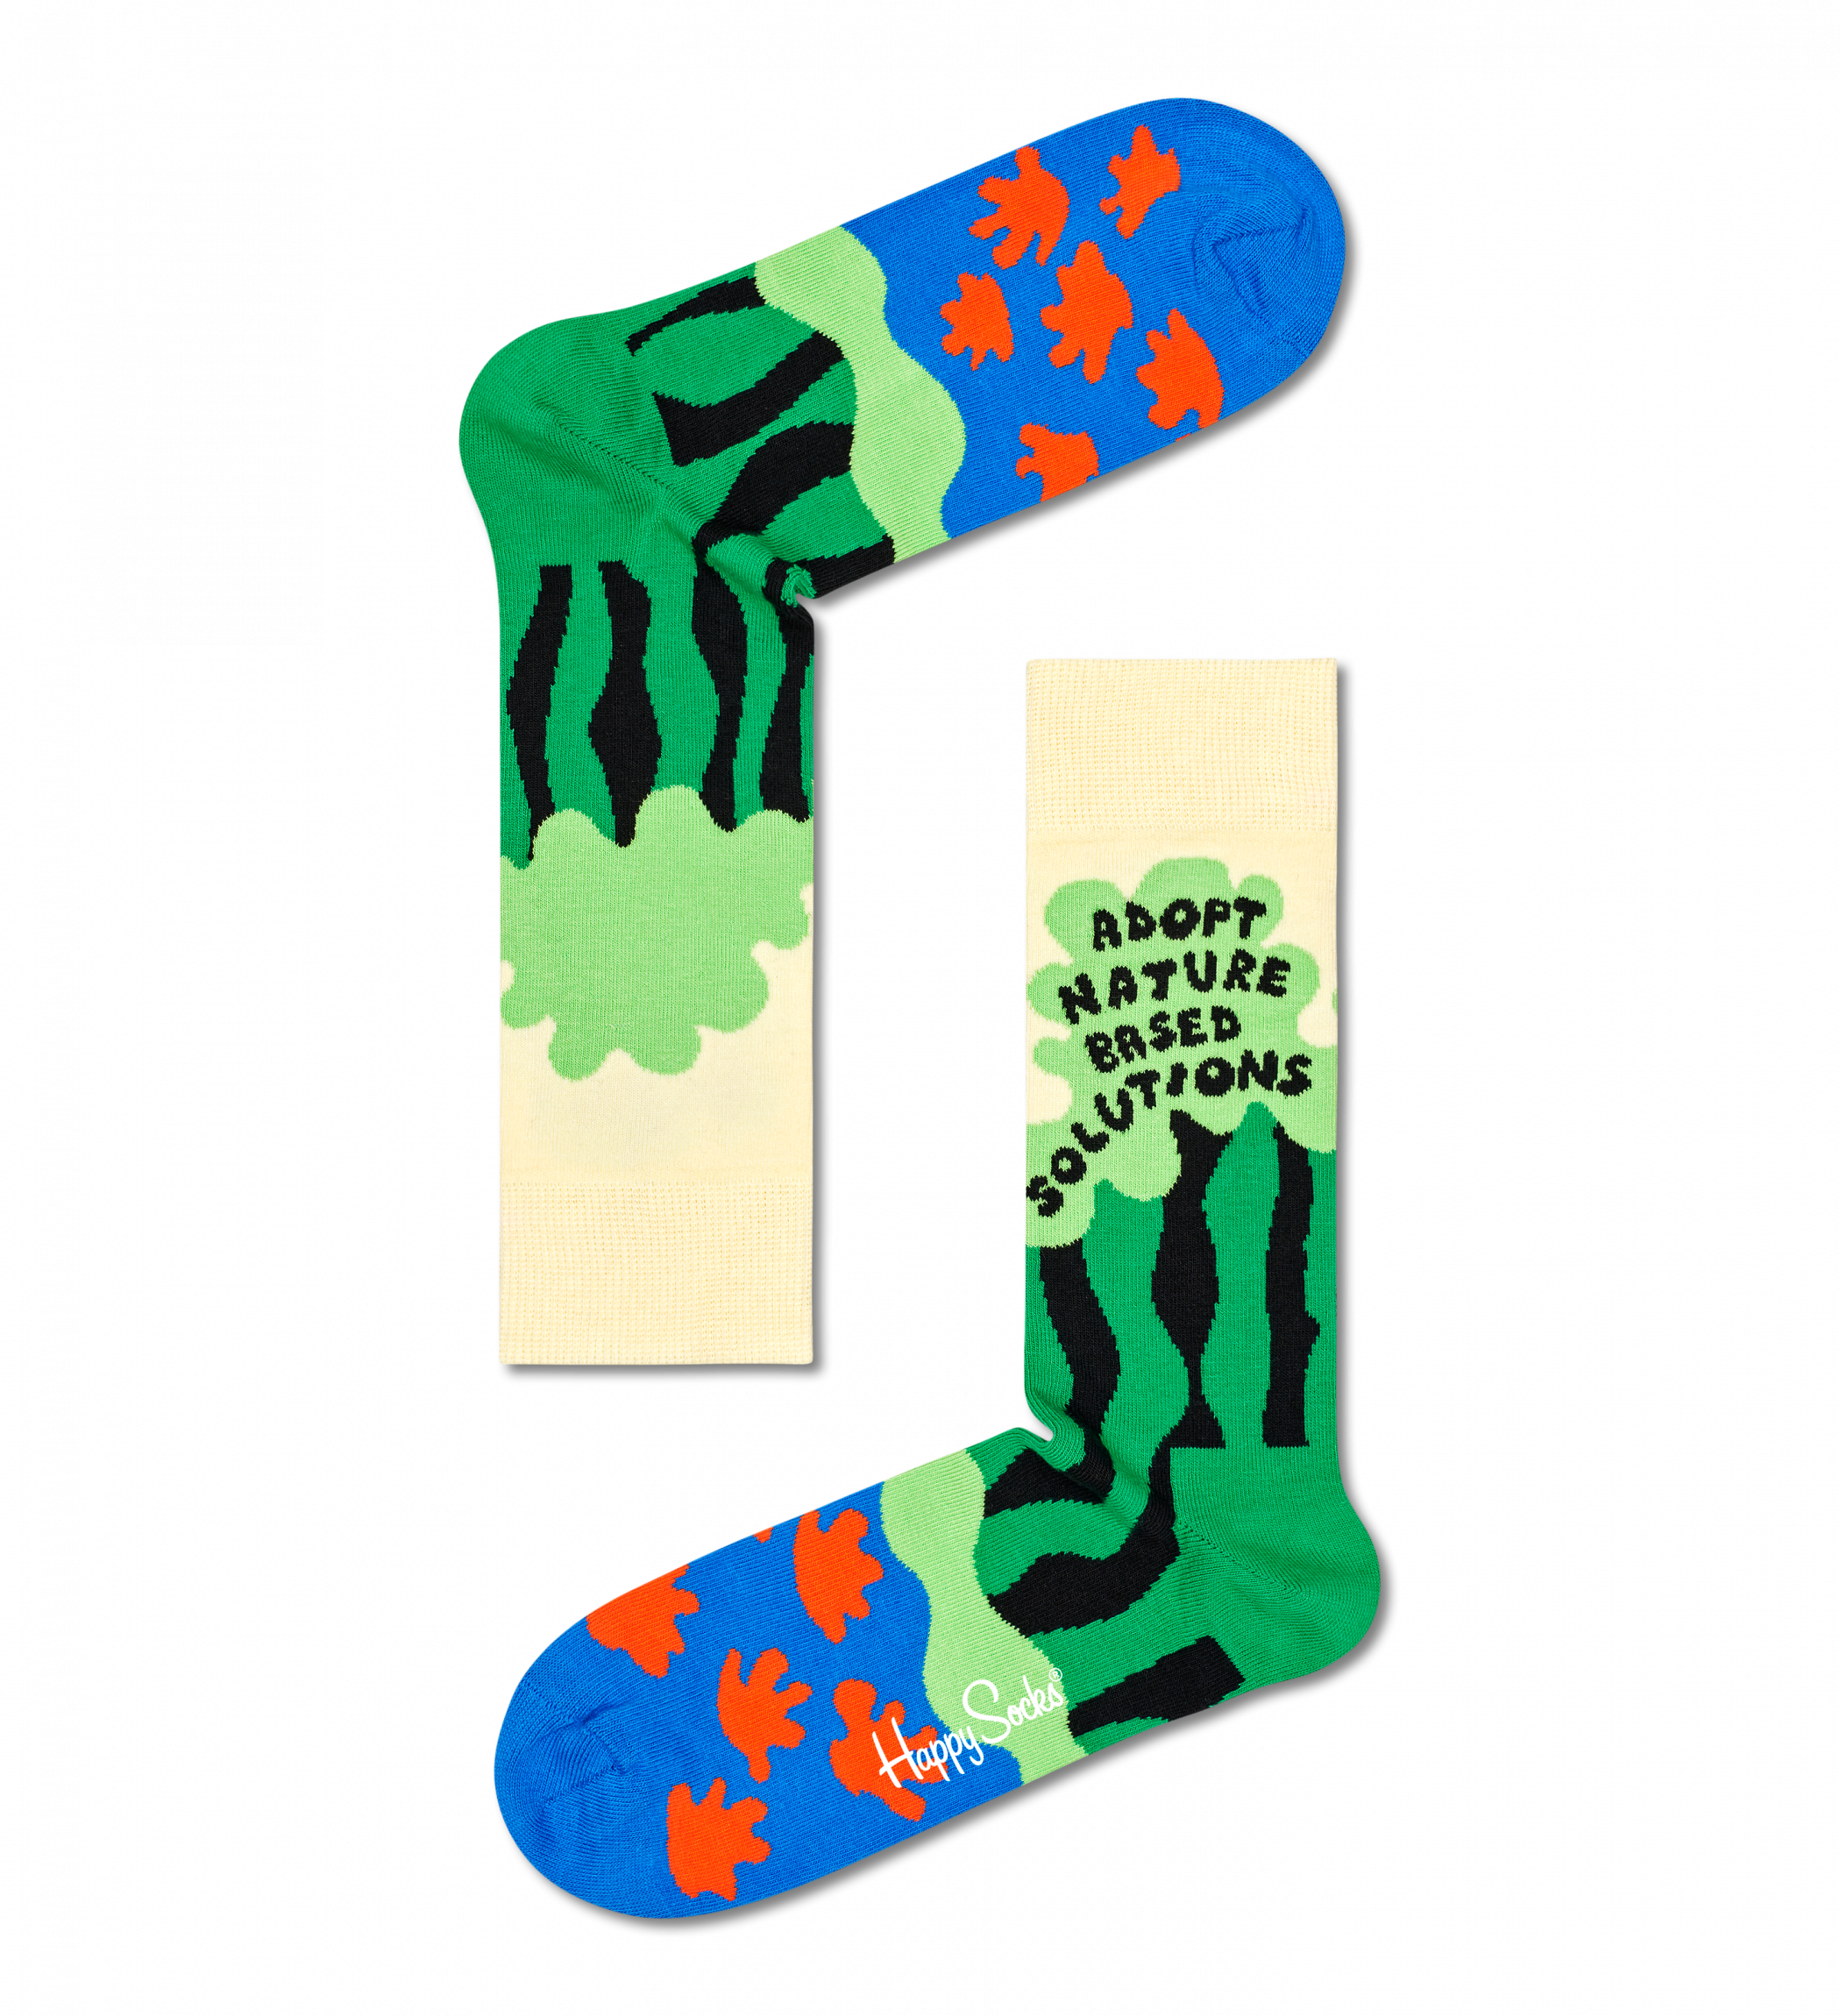 Barevné ponožky Happy Socks x WWF, vzor Nature Based Solutions